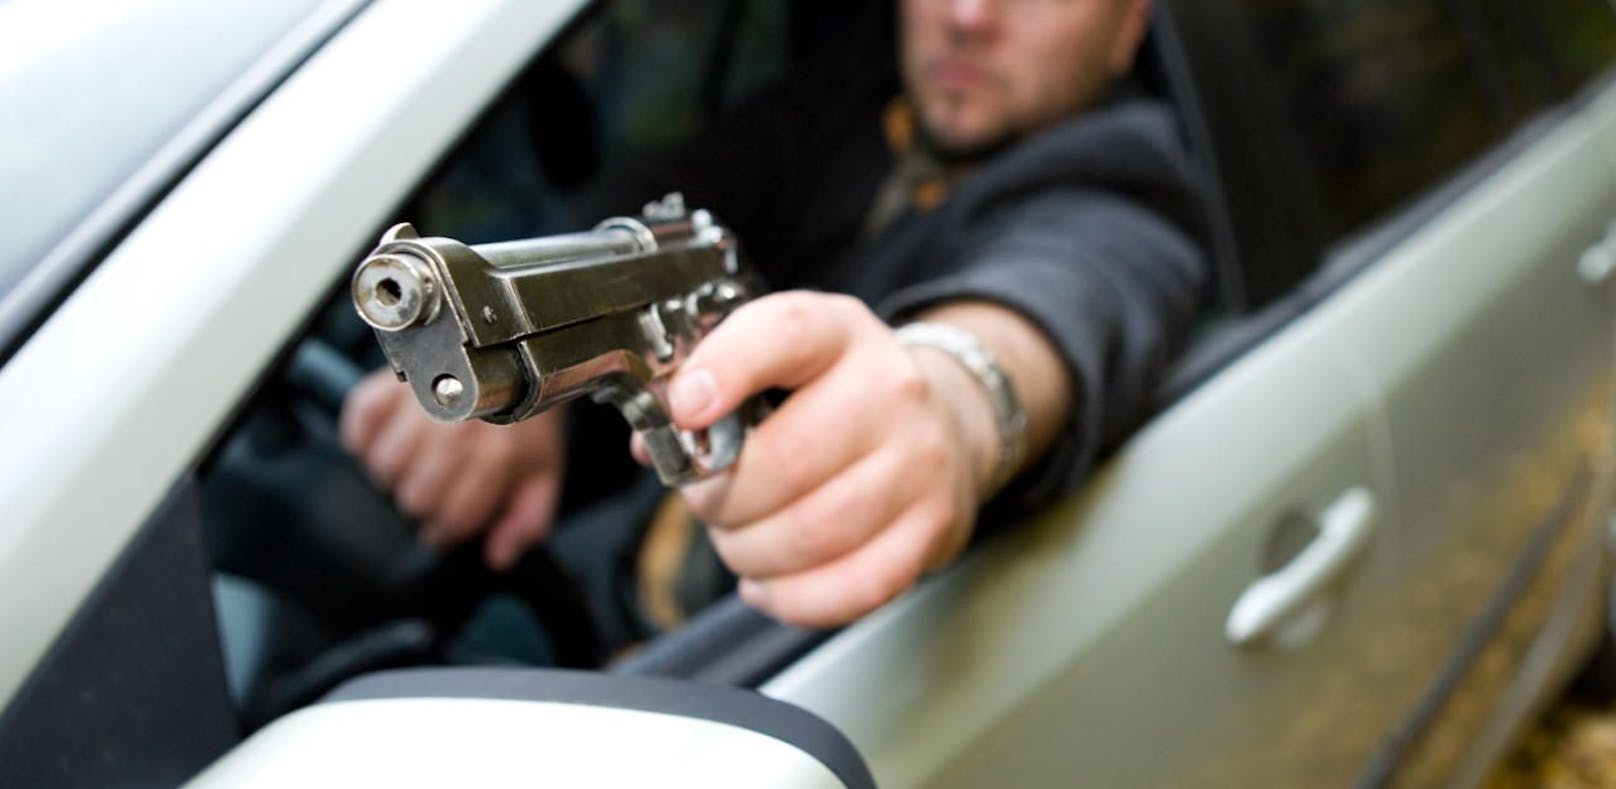 22-Jähriger zieht im Streit um Fahrmanöver Pistole